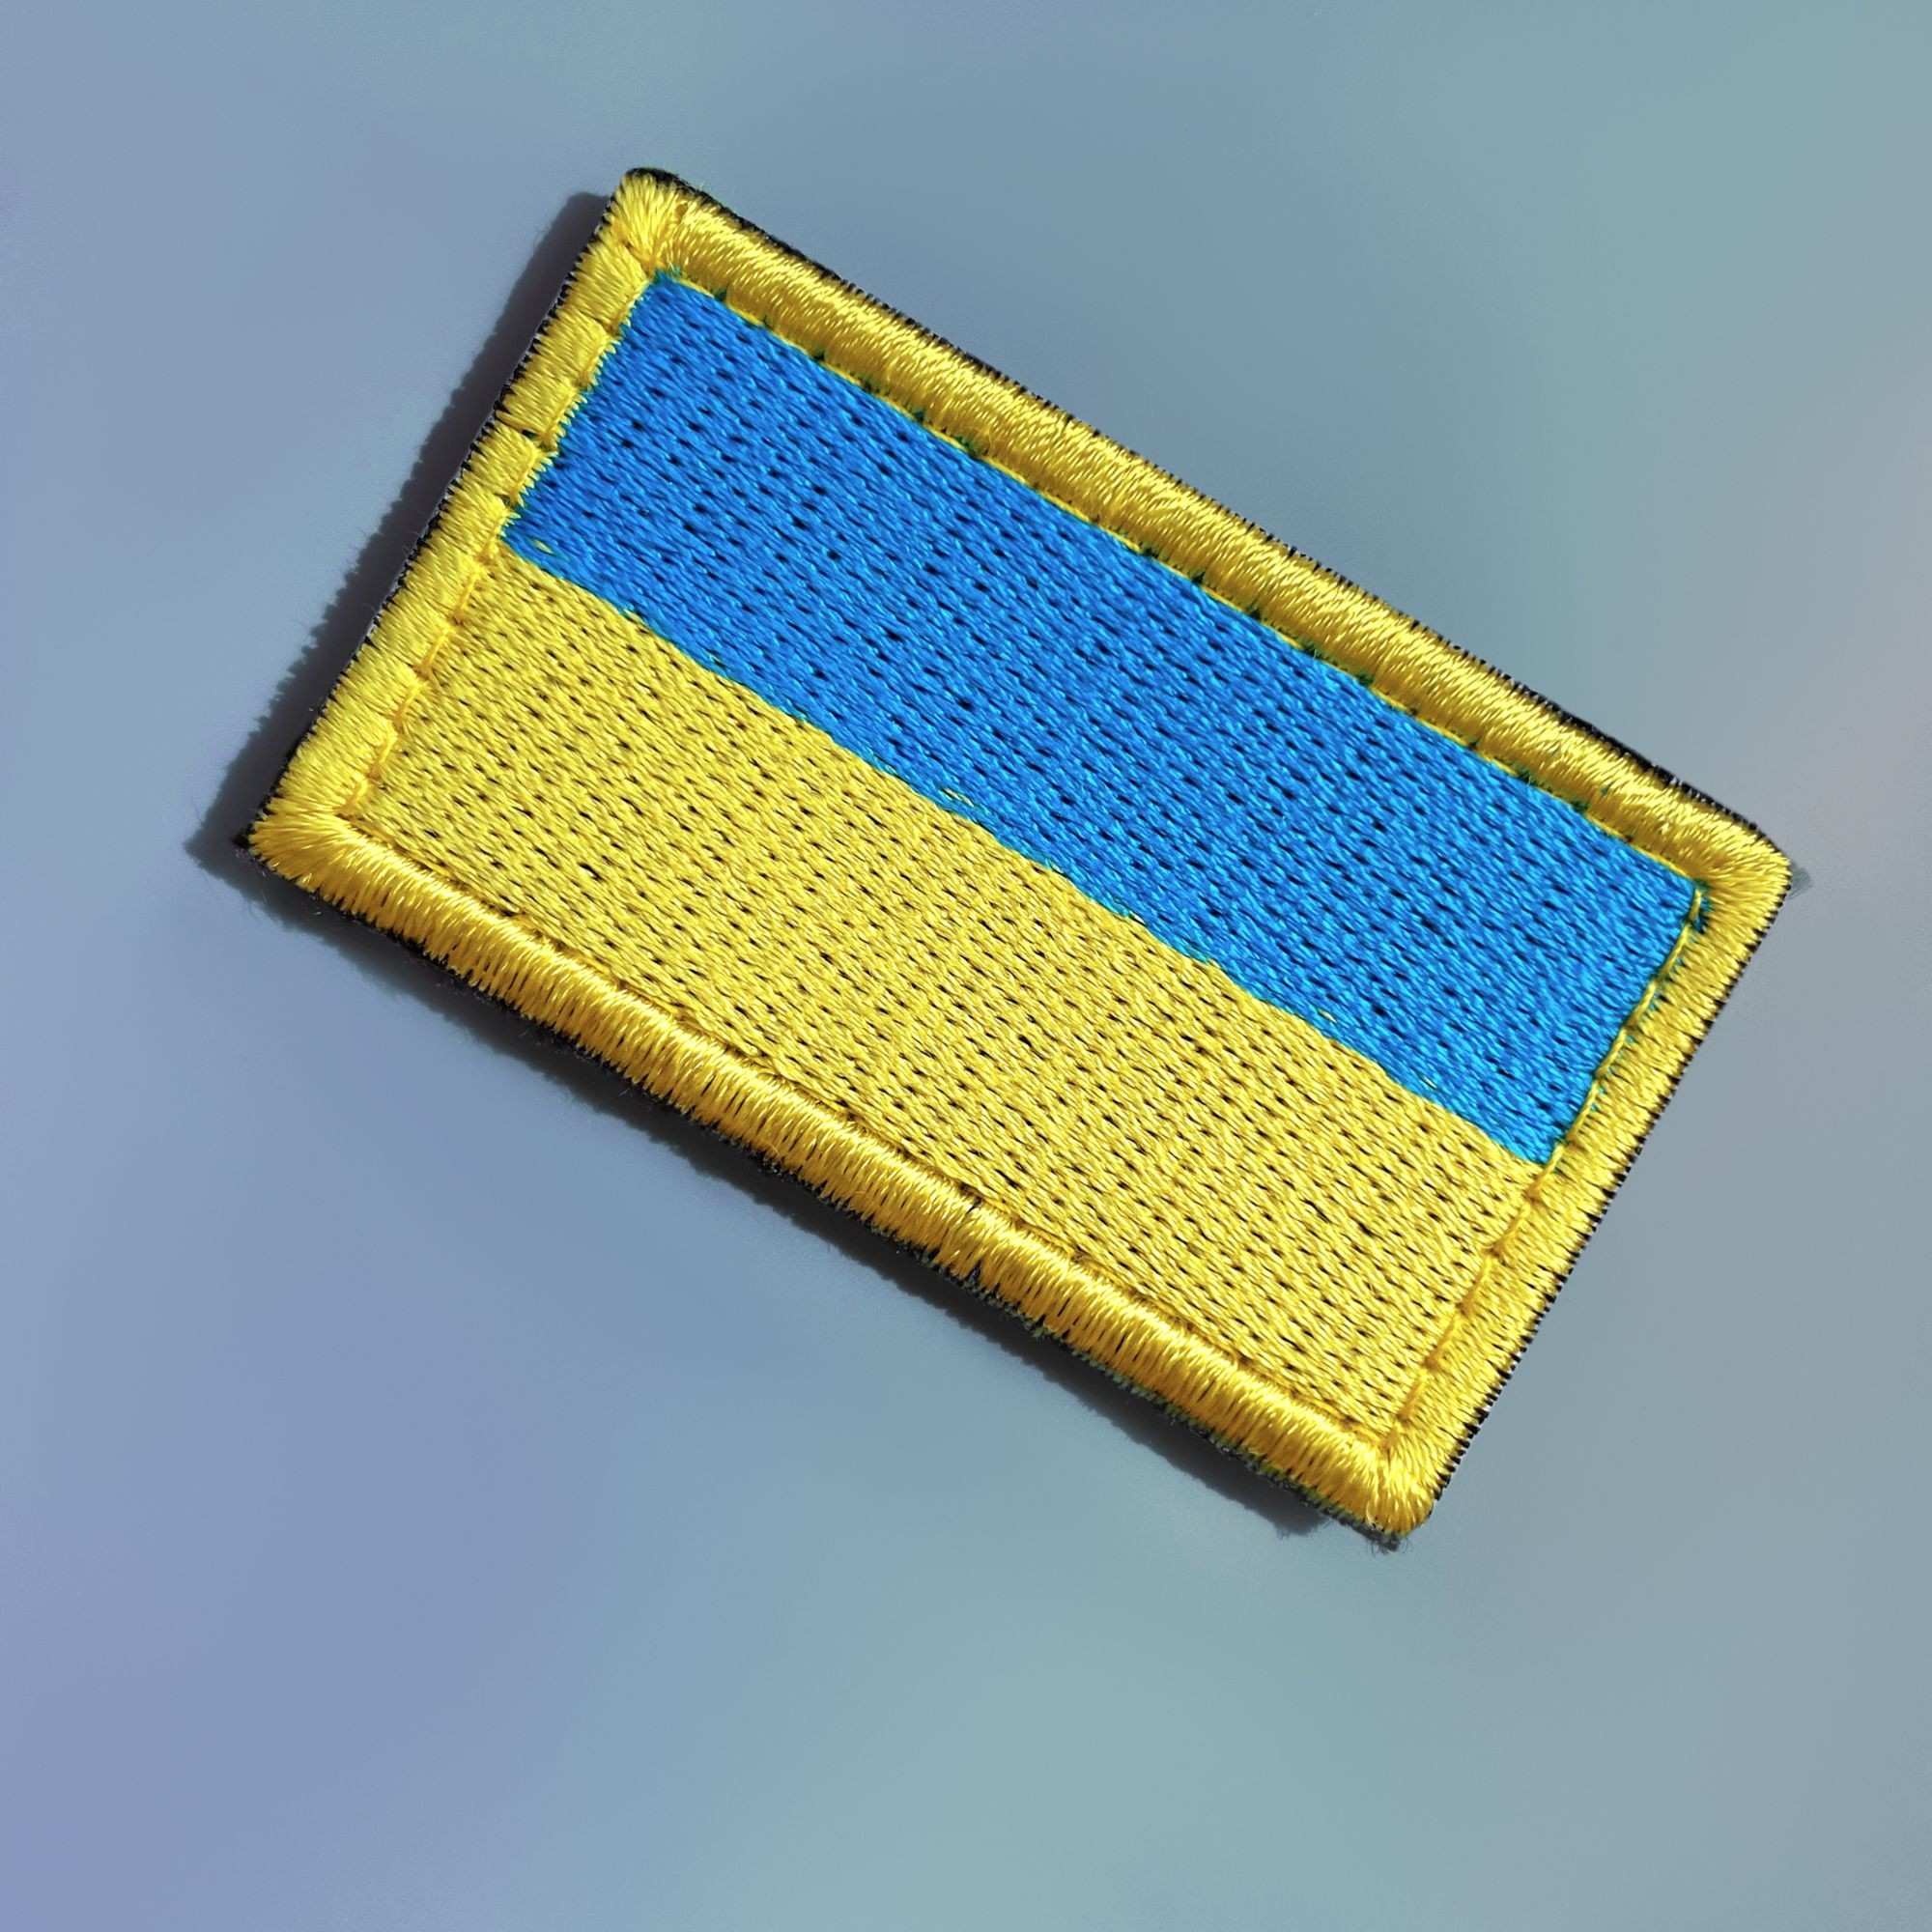 CHEVRON ON VELCRO FLAG OF UKRAINE 3X5 CM